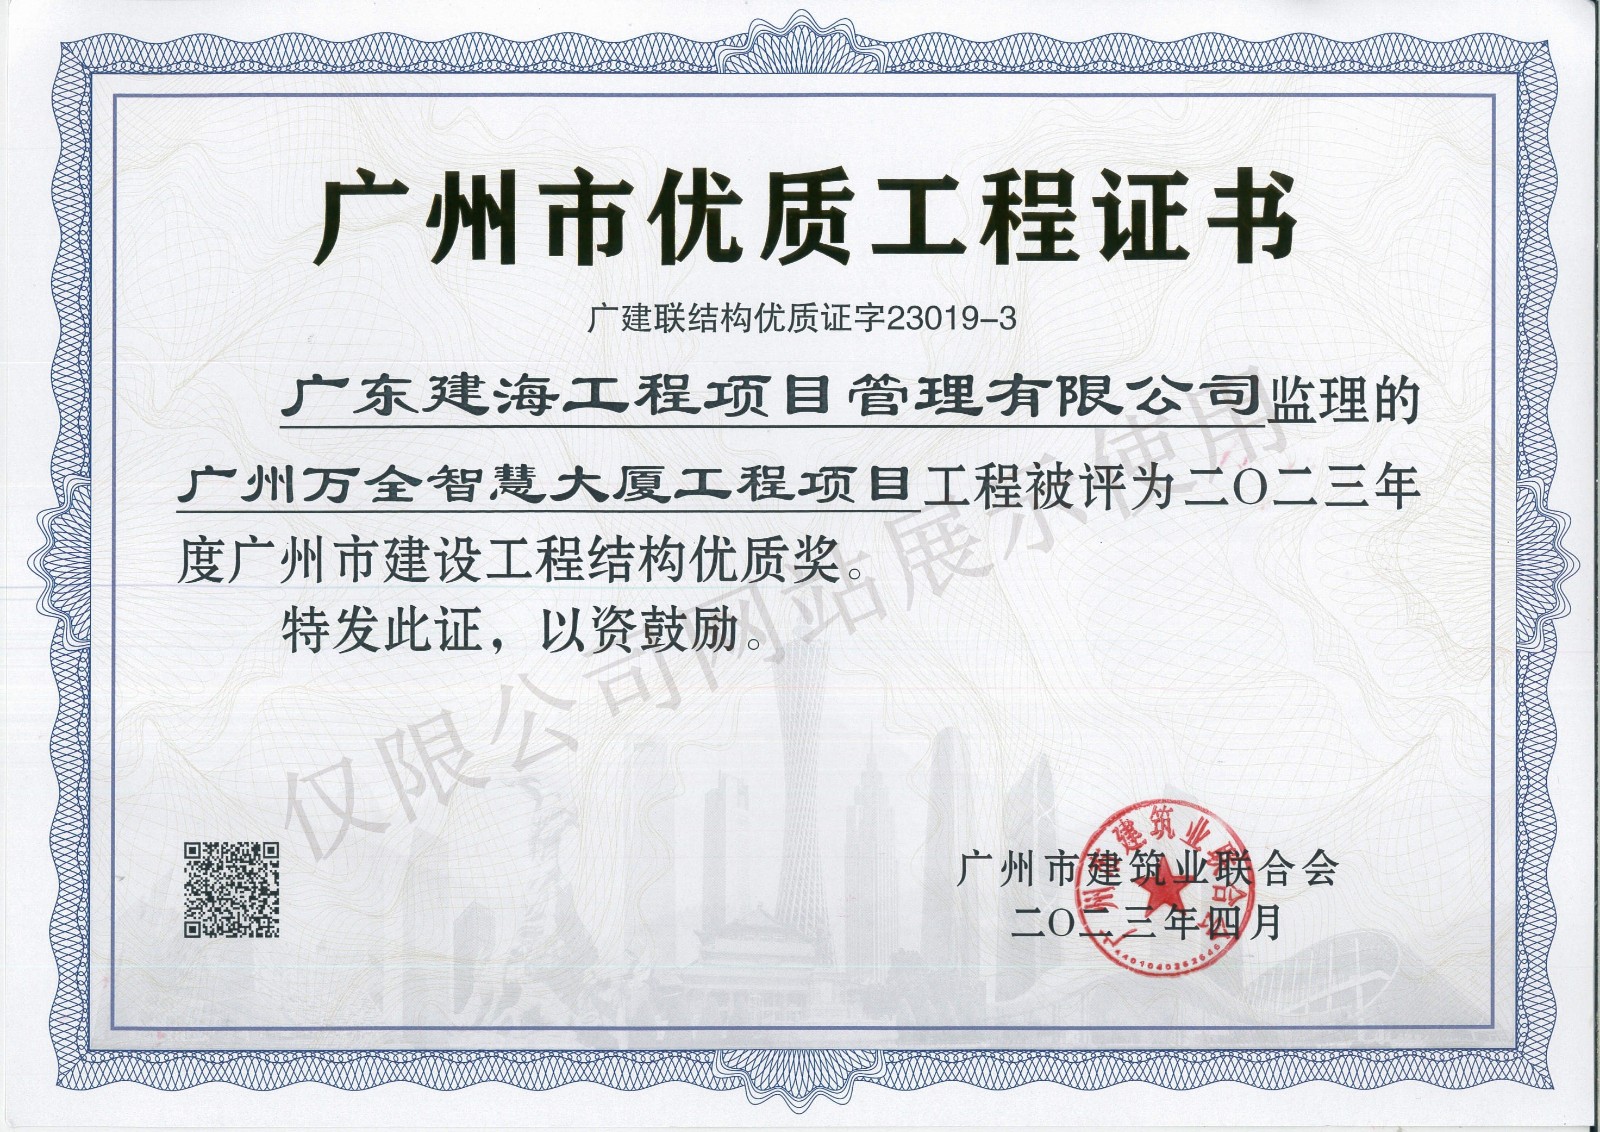 廣州萬全智慧大廈工程-結構優質獎證書